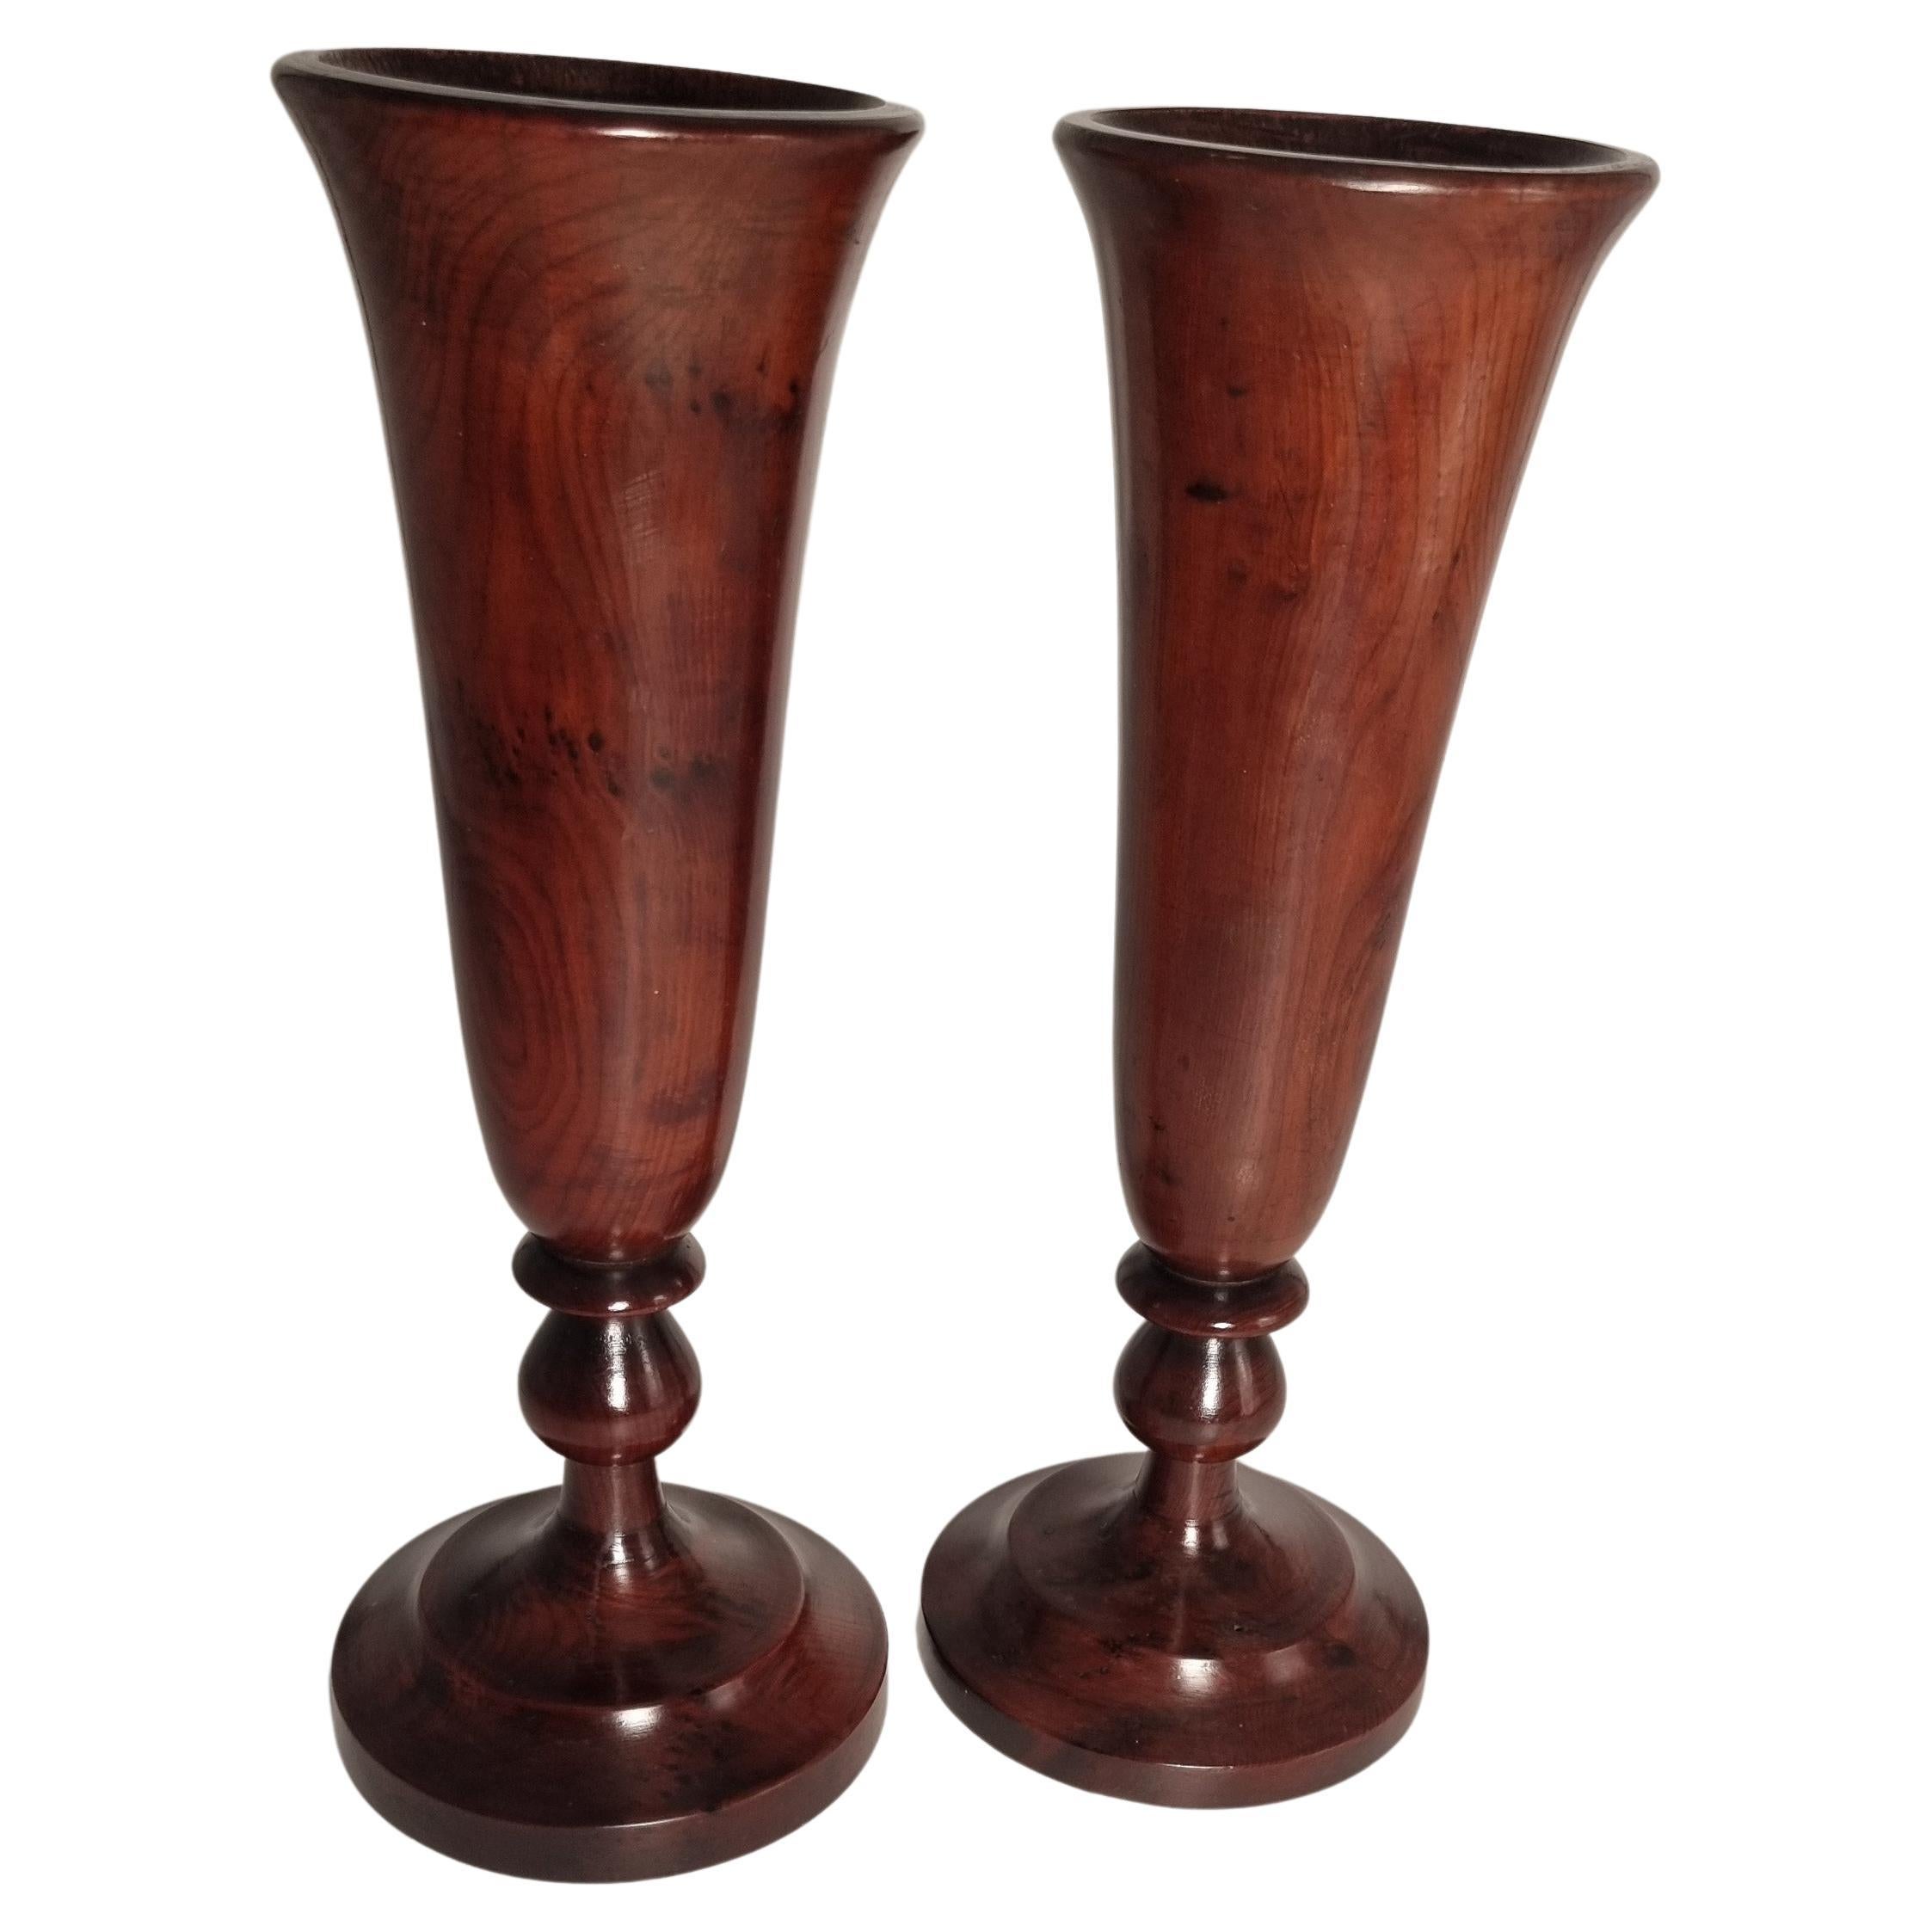 Paire de vases en bois d'if du XVIIIe siècle, vers 1760